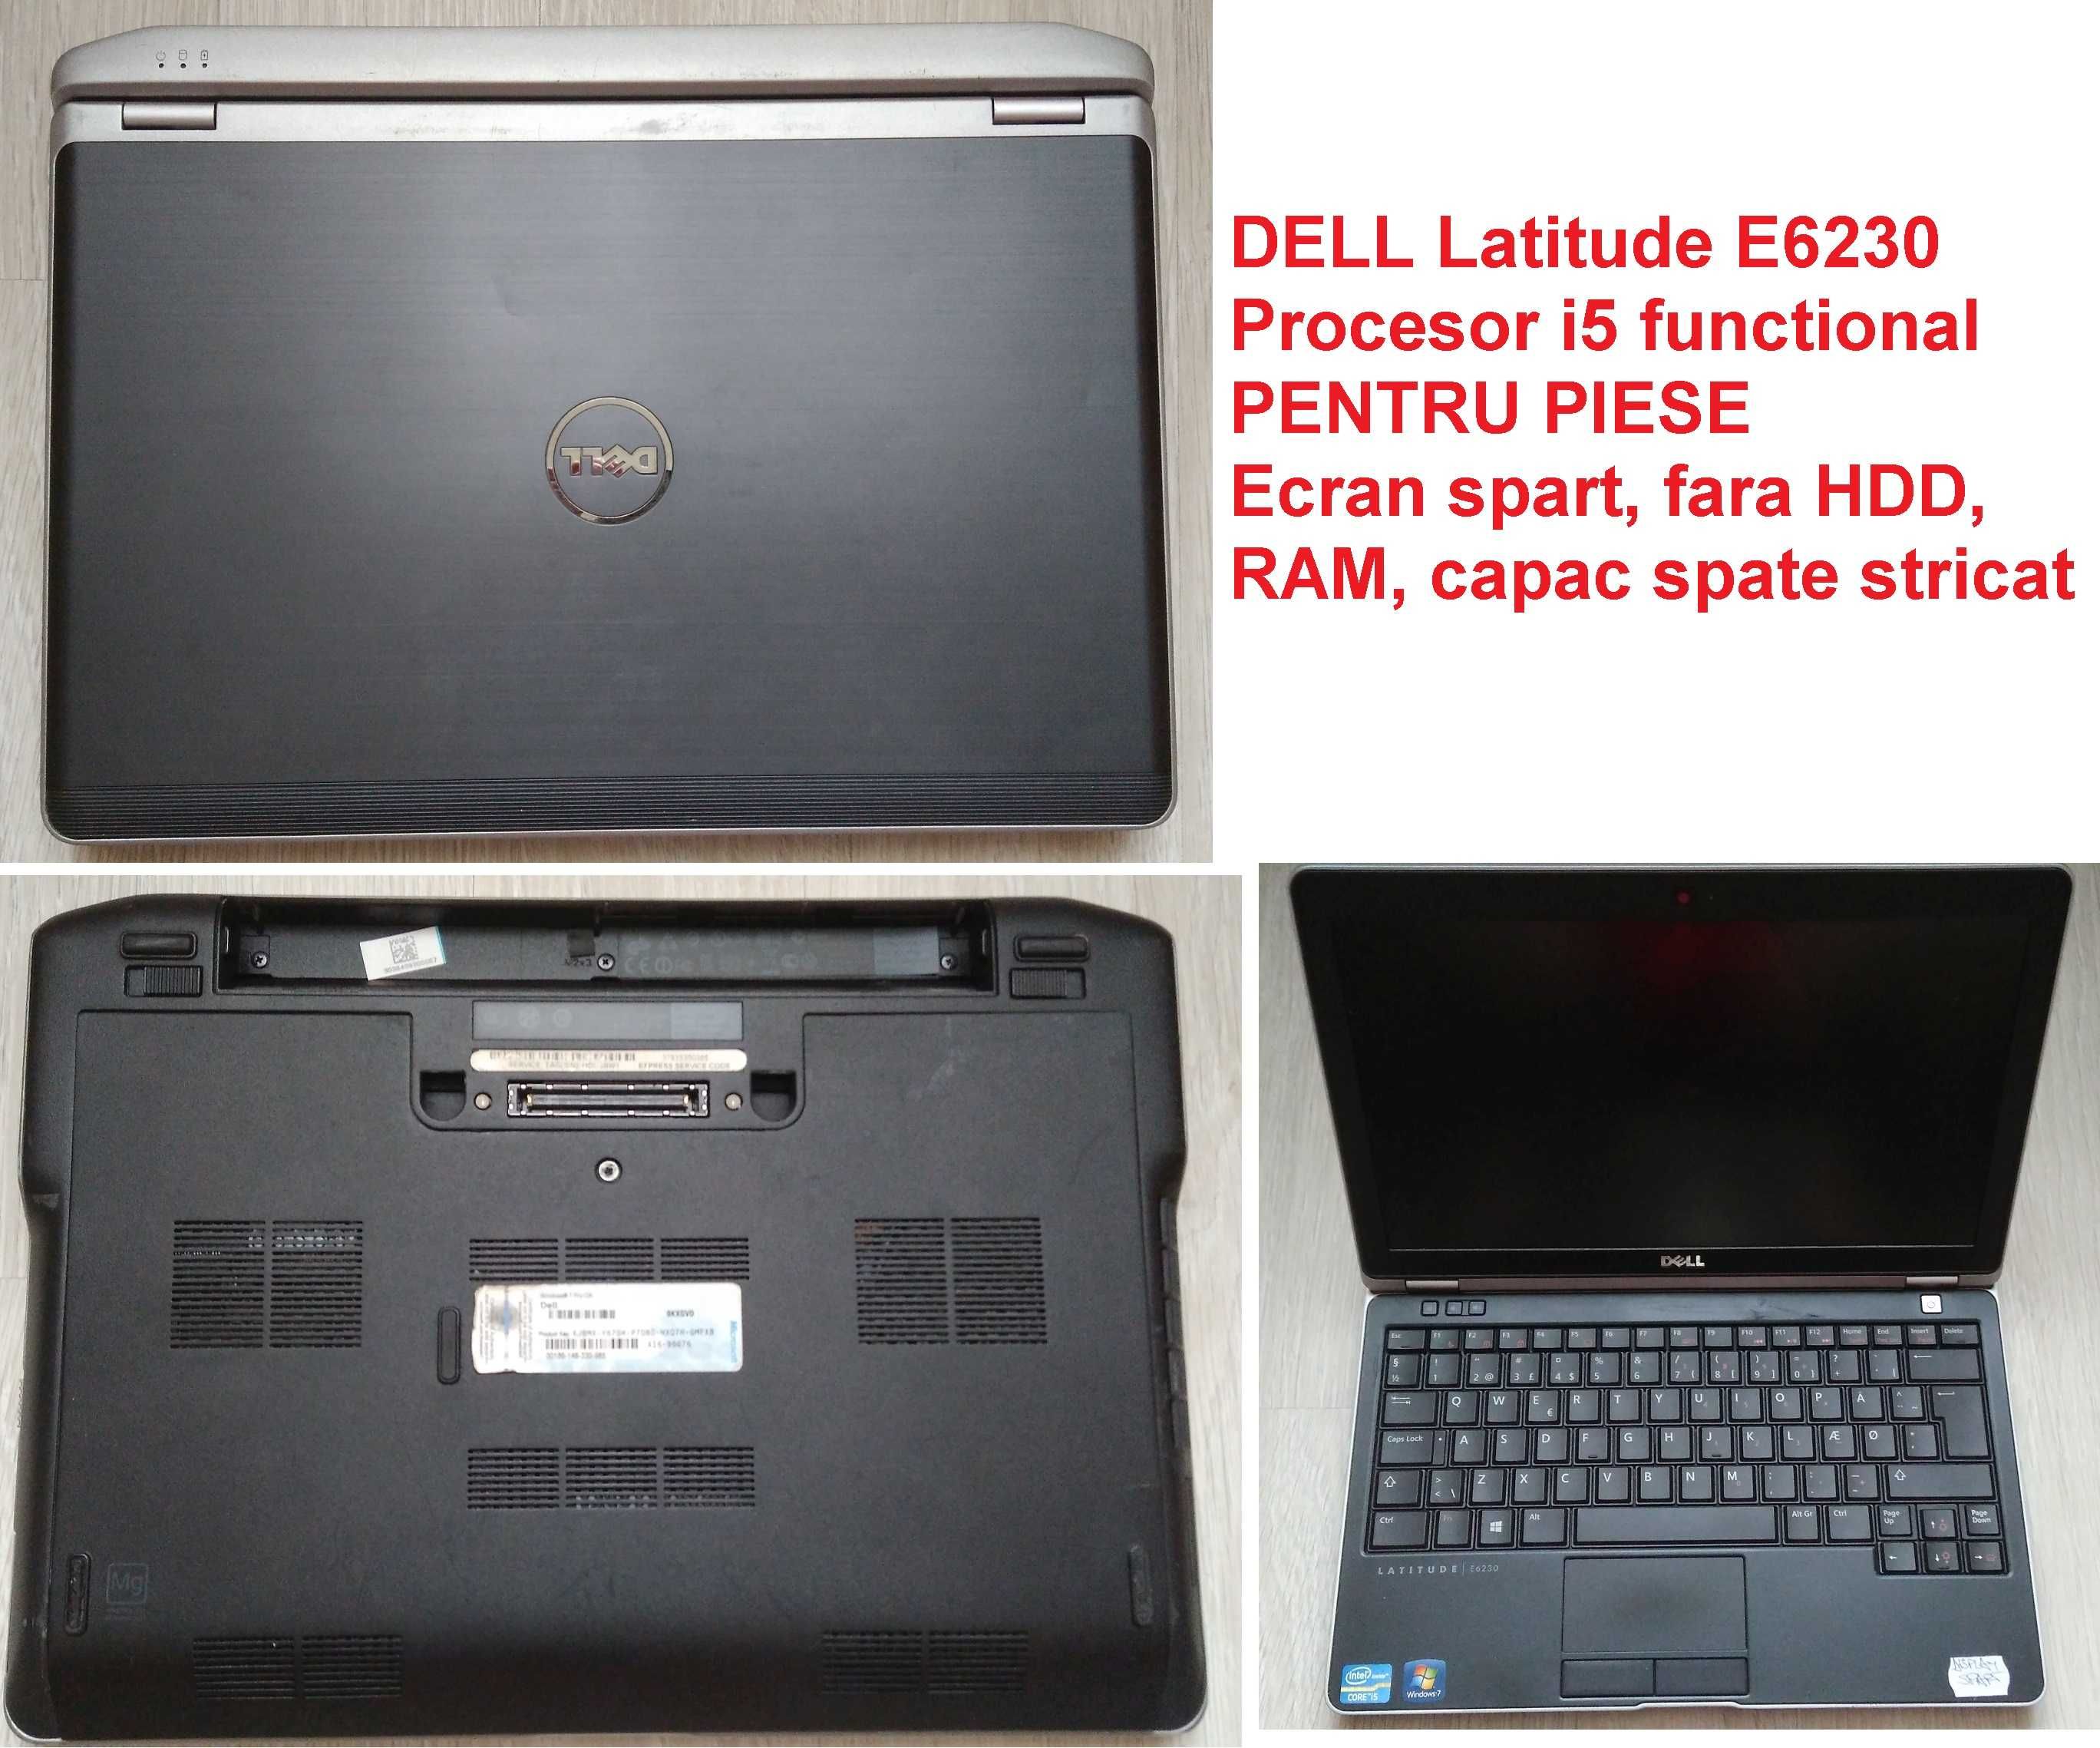 Laptop DELL Latitude E6230 cu accesorii + doua incomplete pentru piese